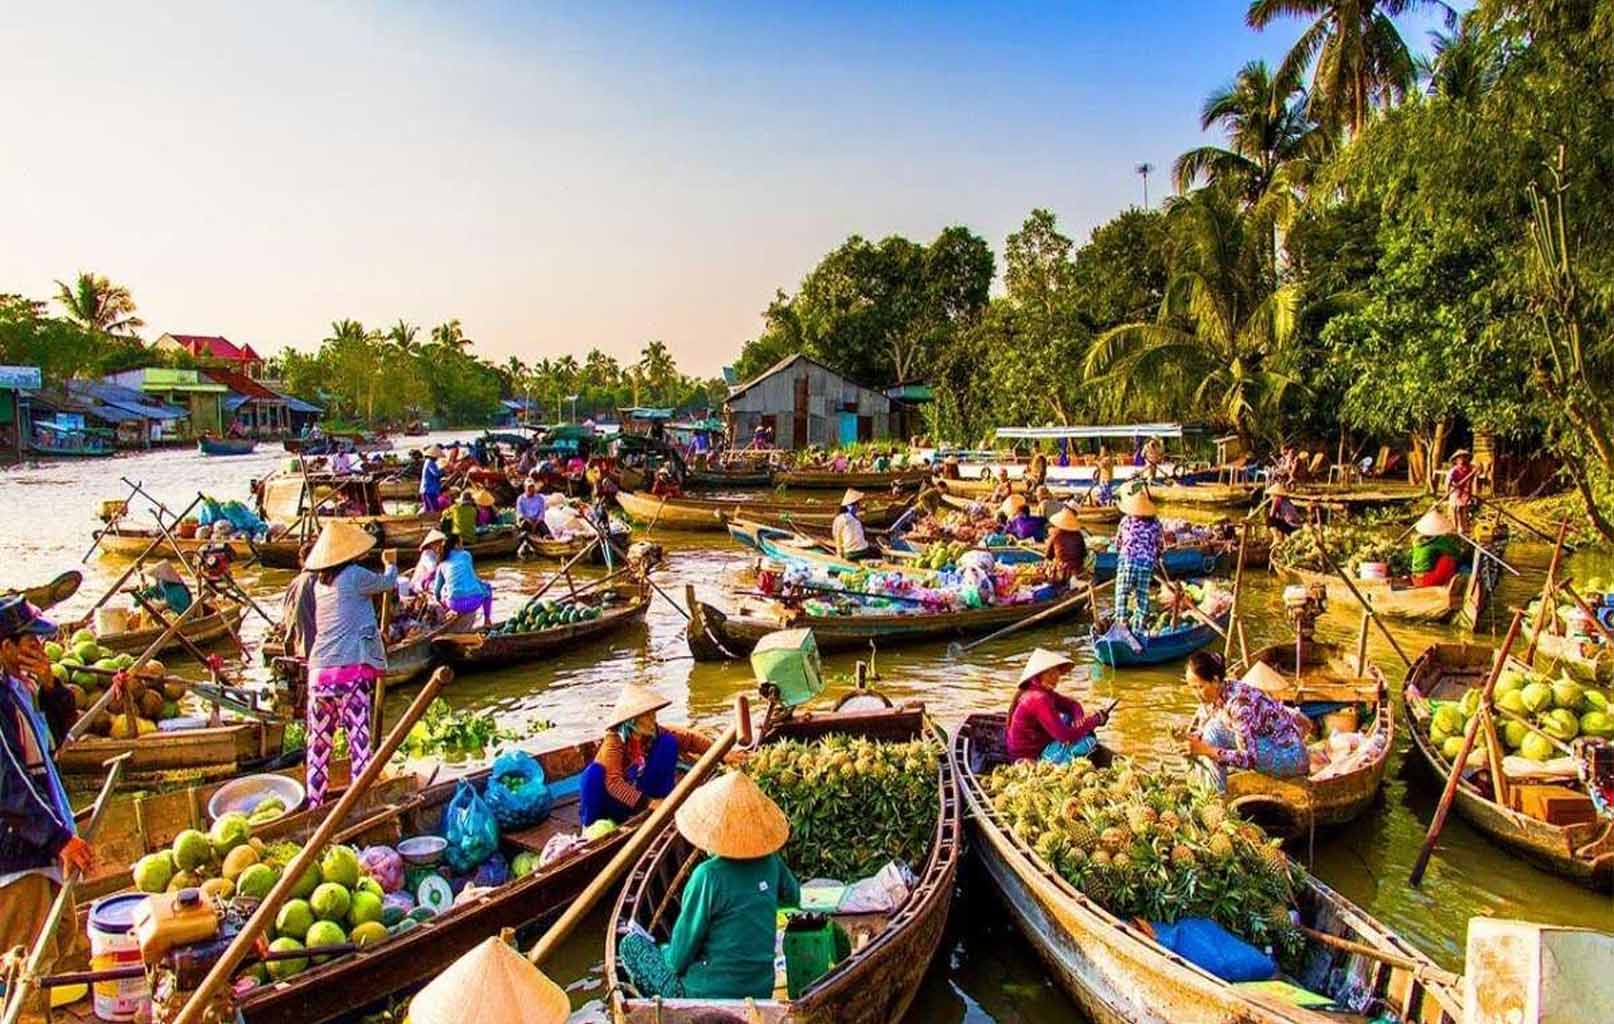 Du lịch Miền Tây - Du lịch Châu Đốc - Hà Tiên - Cần Thơ mùa Thu từ Sài Gòn